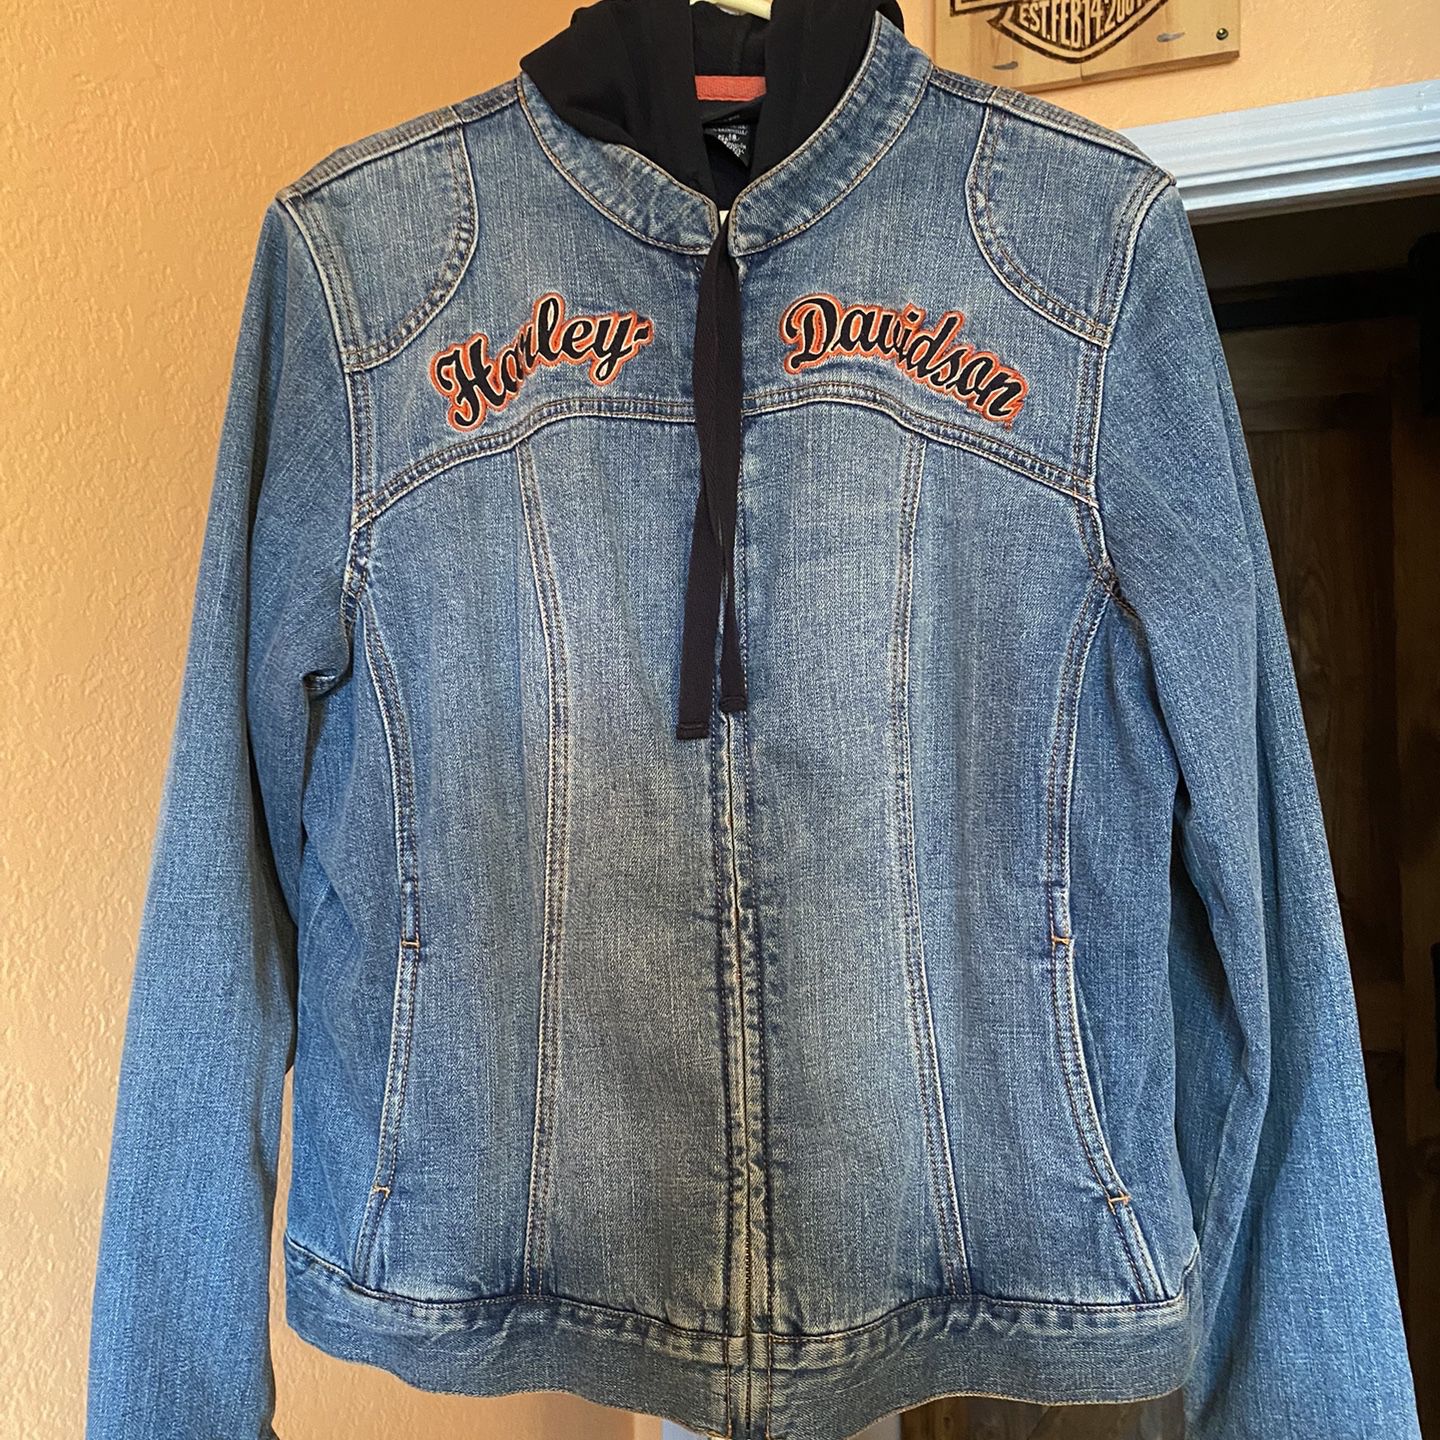 Harley Davidson Jacket/vests/sweaters